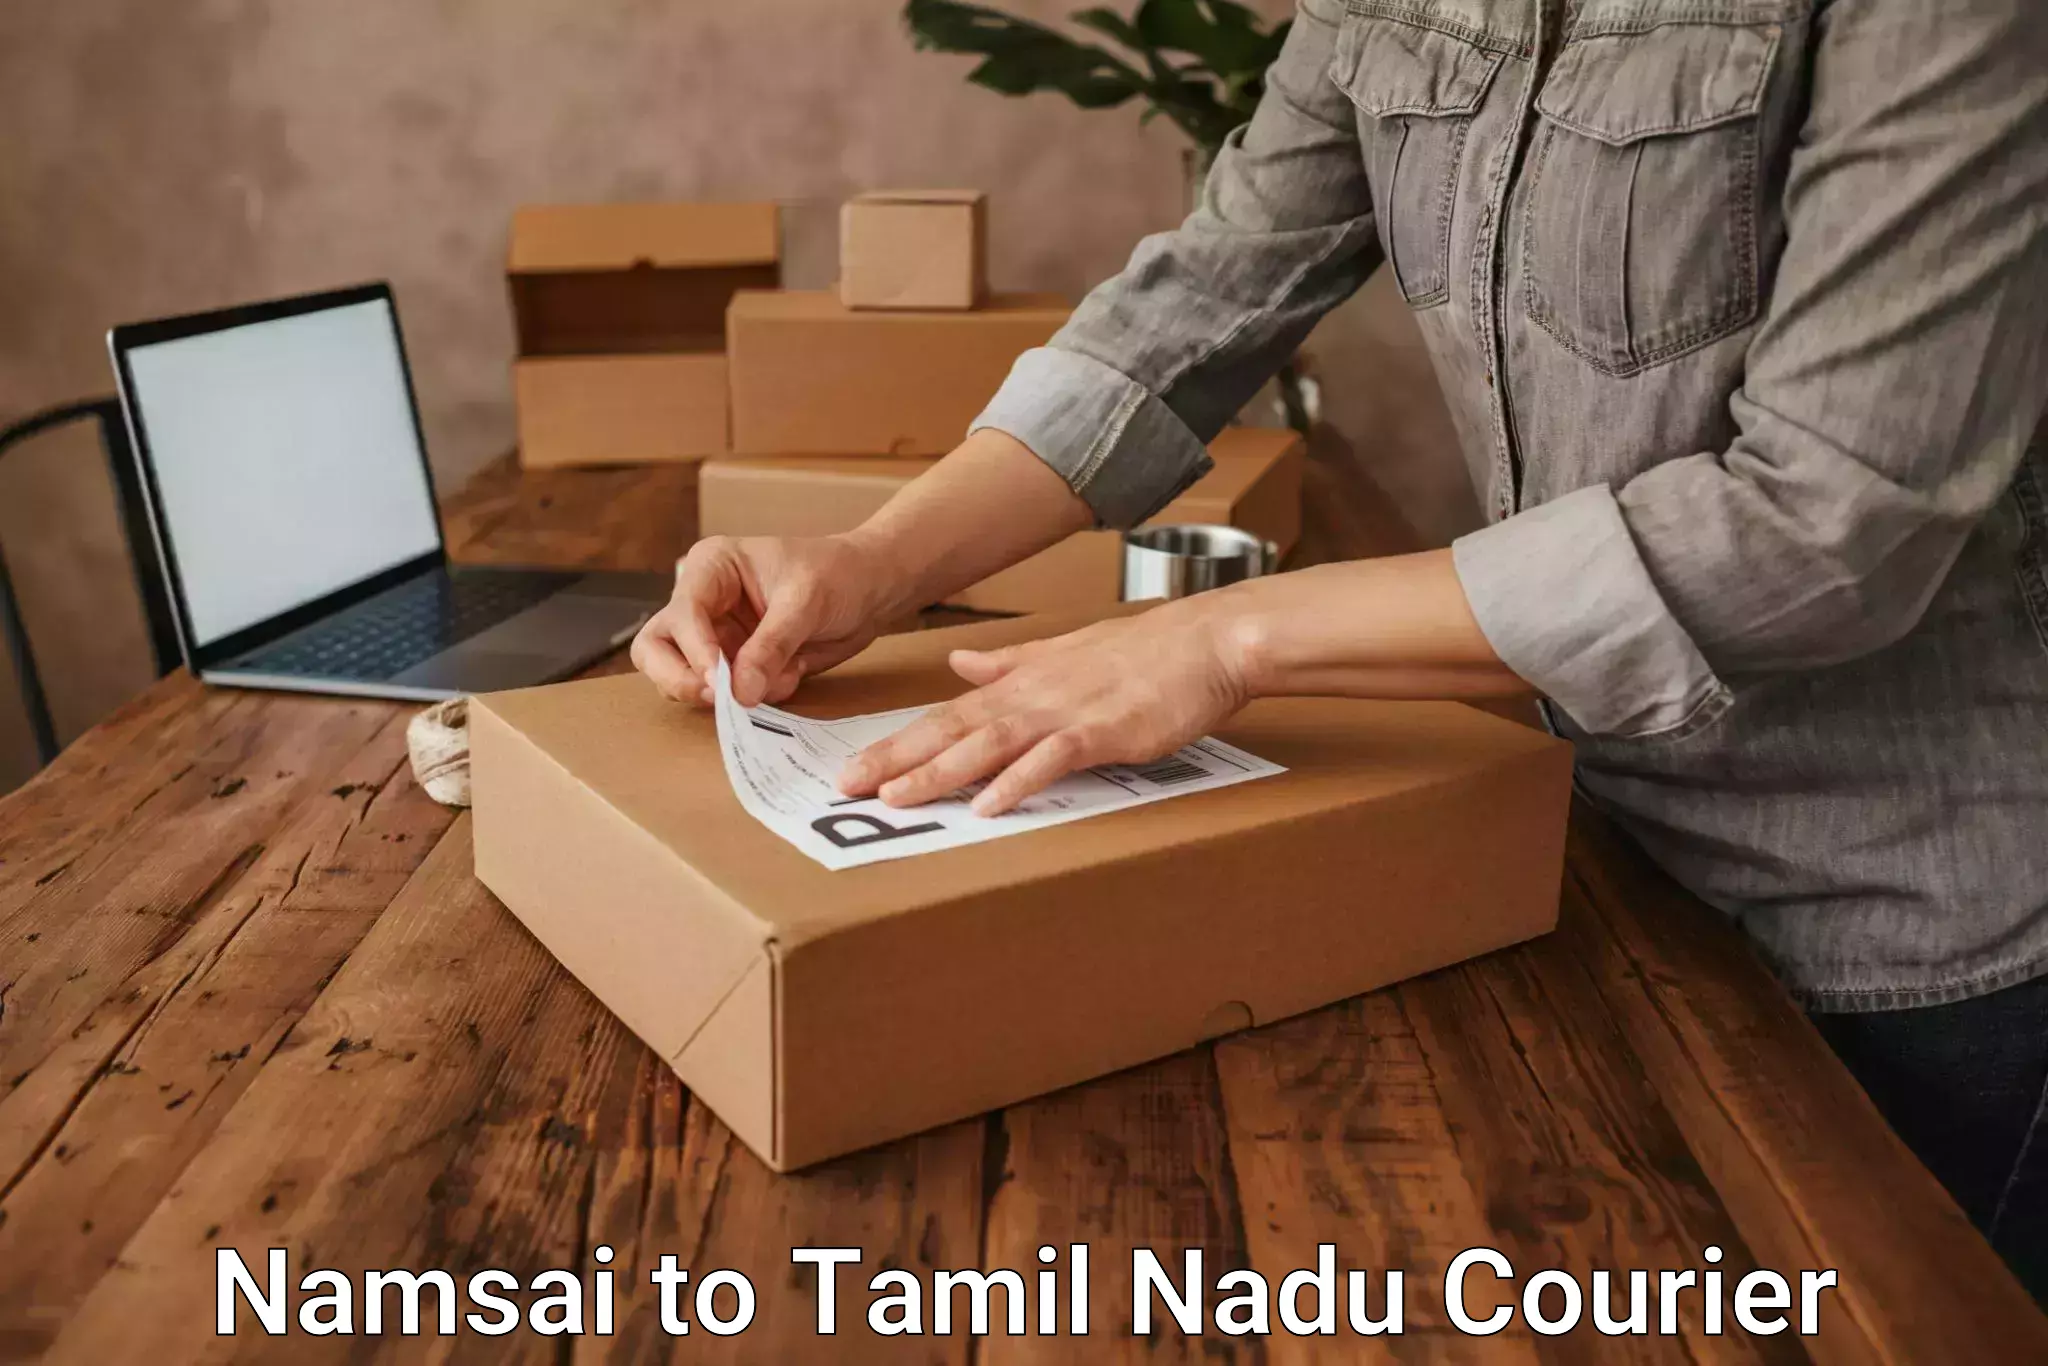 Comprehensive freight services Namsai to Thiruvadanai